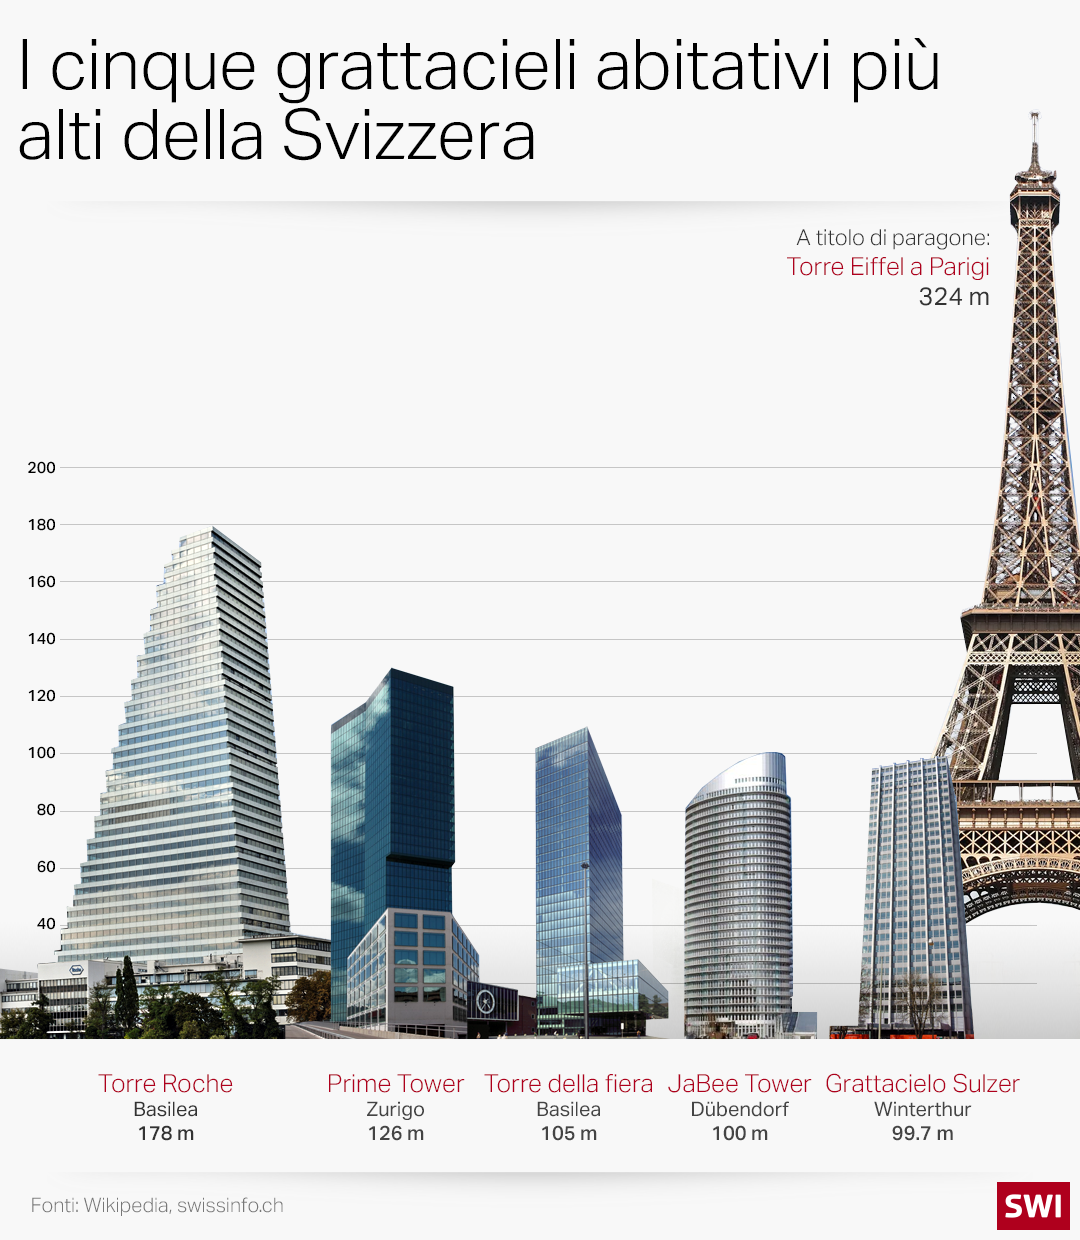 grattacieli abitativi più alti della svizzera